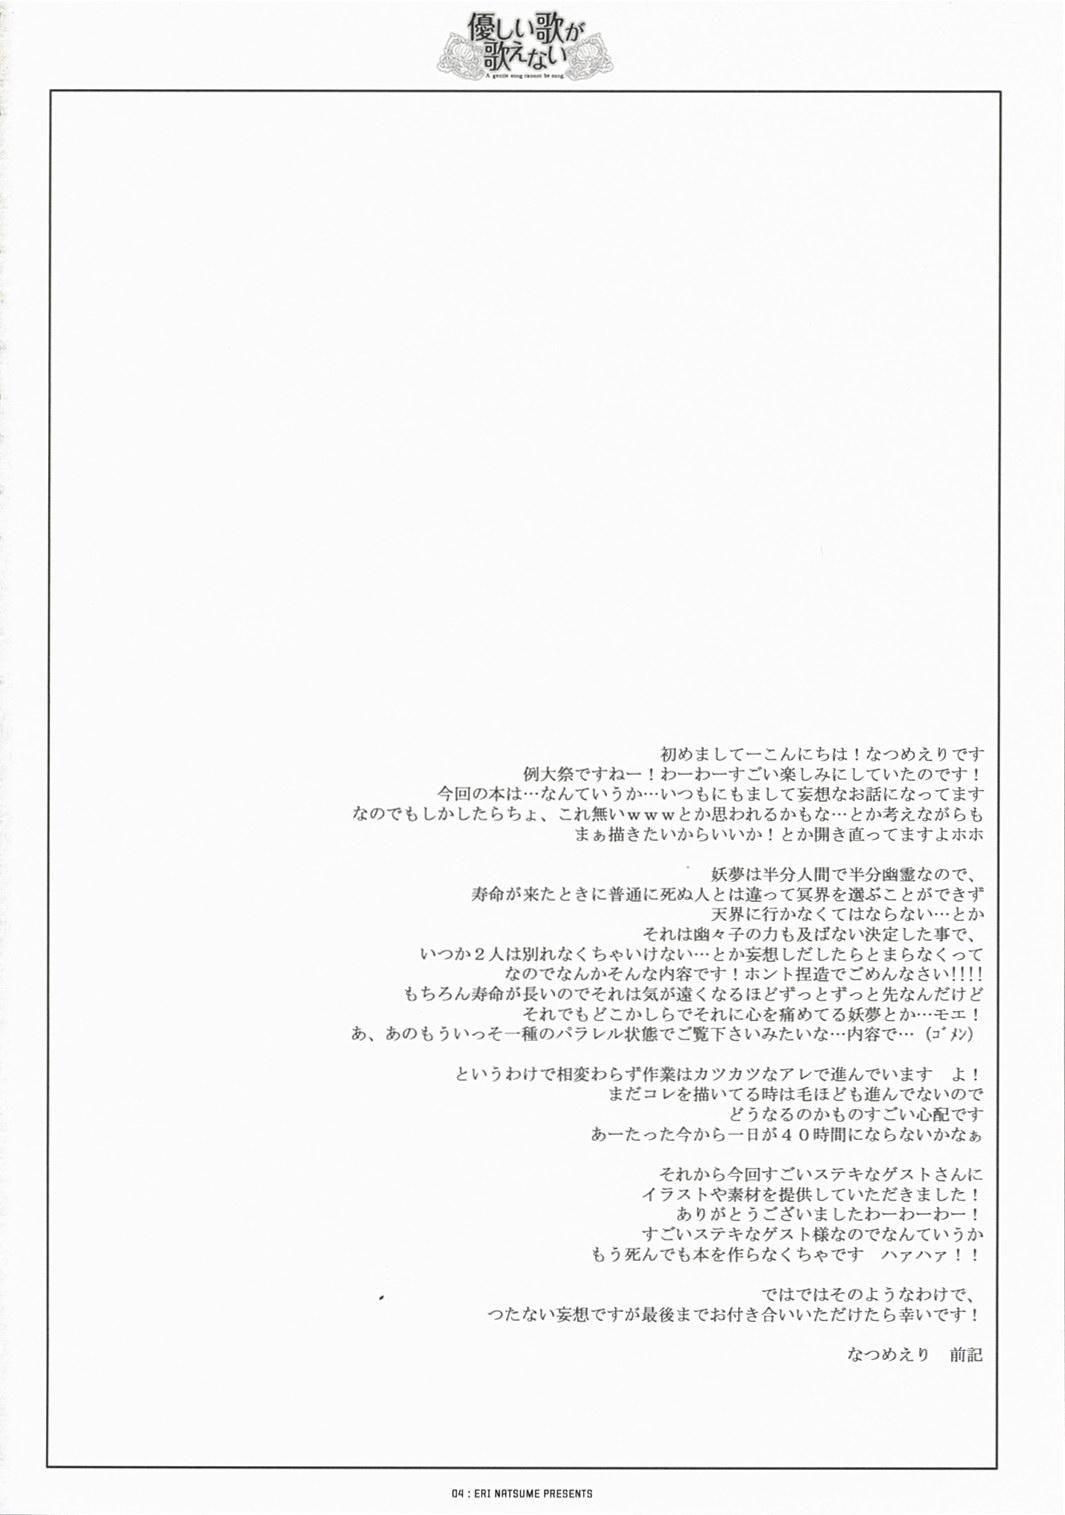 Wank Yasashii uta ga utaenai | A Gentle Song Cannot Be Sung - Touhou project Gostoso - Page 4